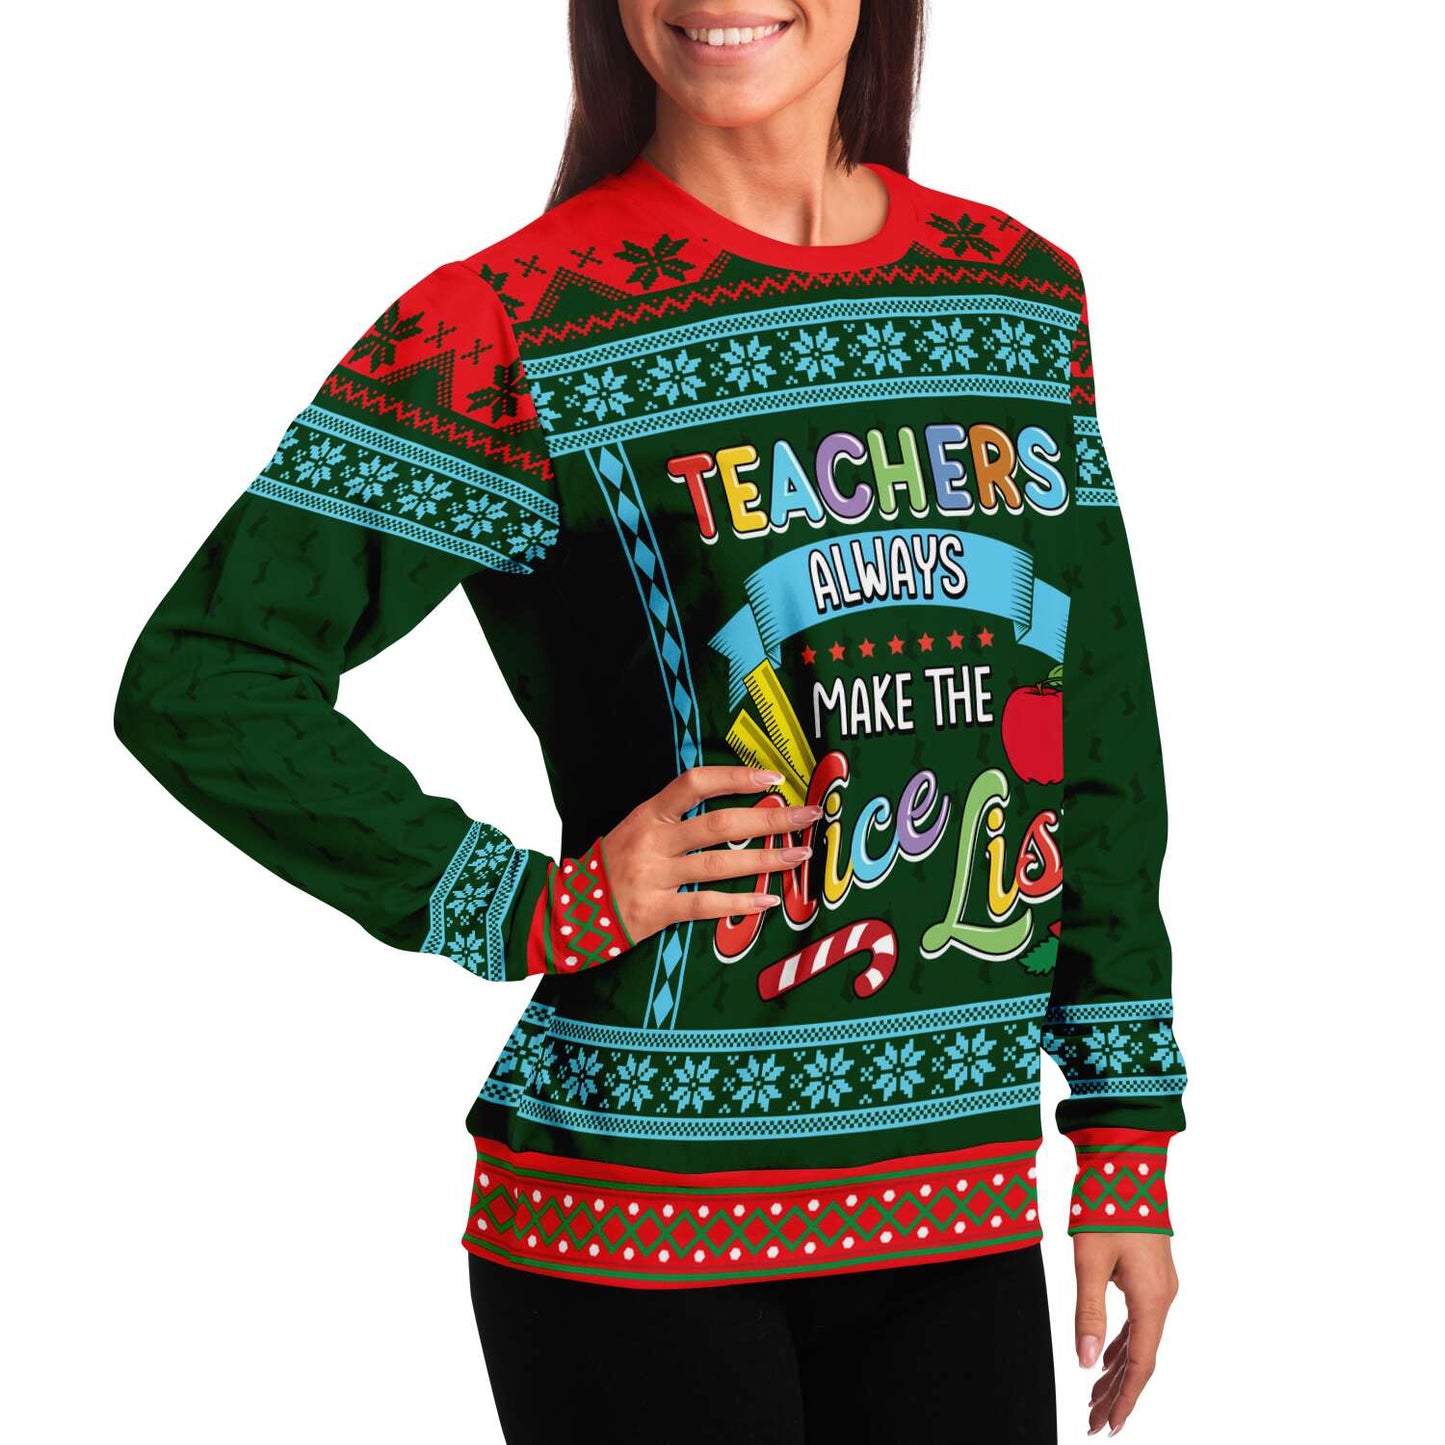 Ugly Christmas Sweatshirt | Teachers Always Make The Nice List Ugly Christmas Sweatshirt-TD Gift Solutions.com